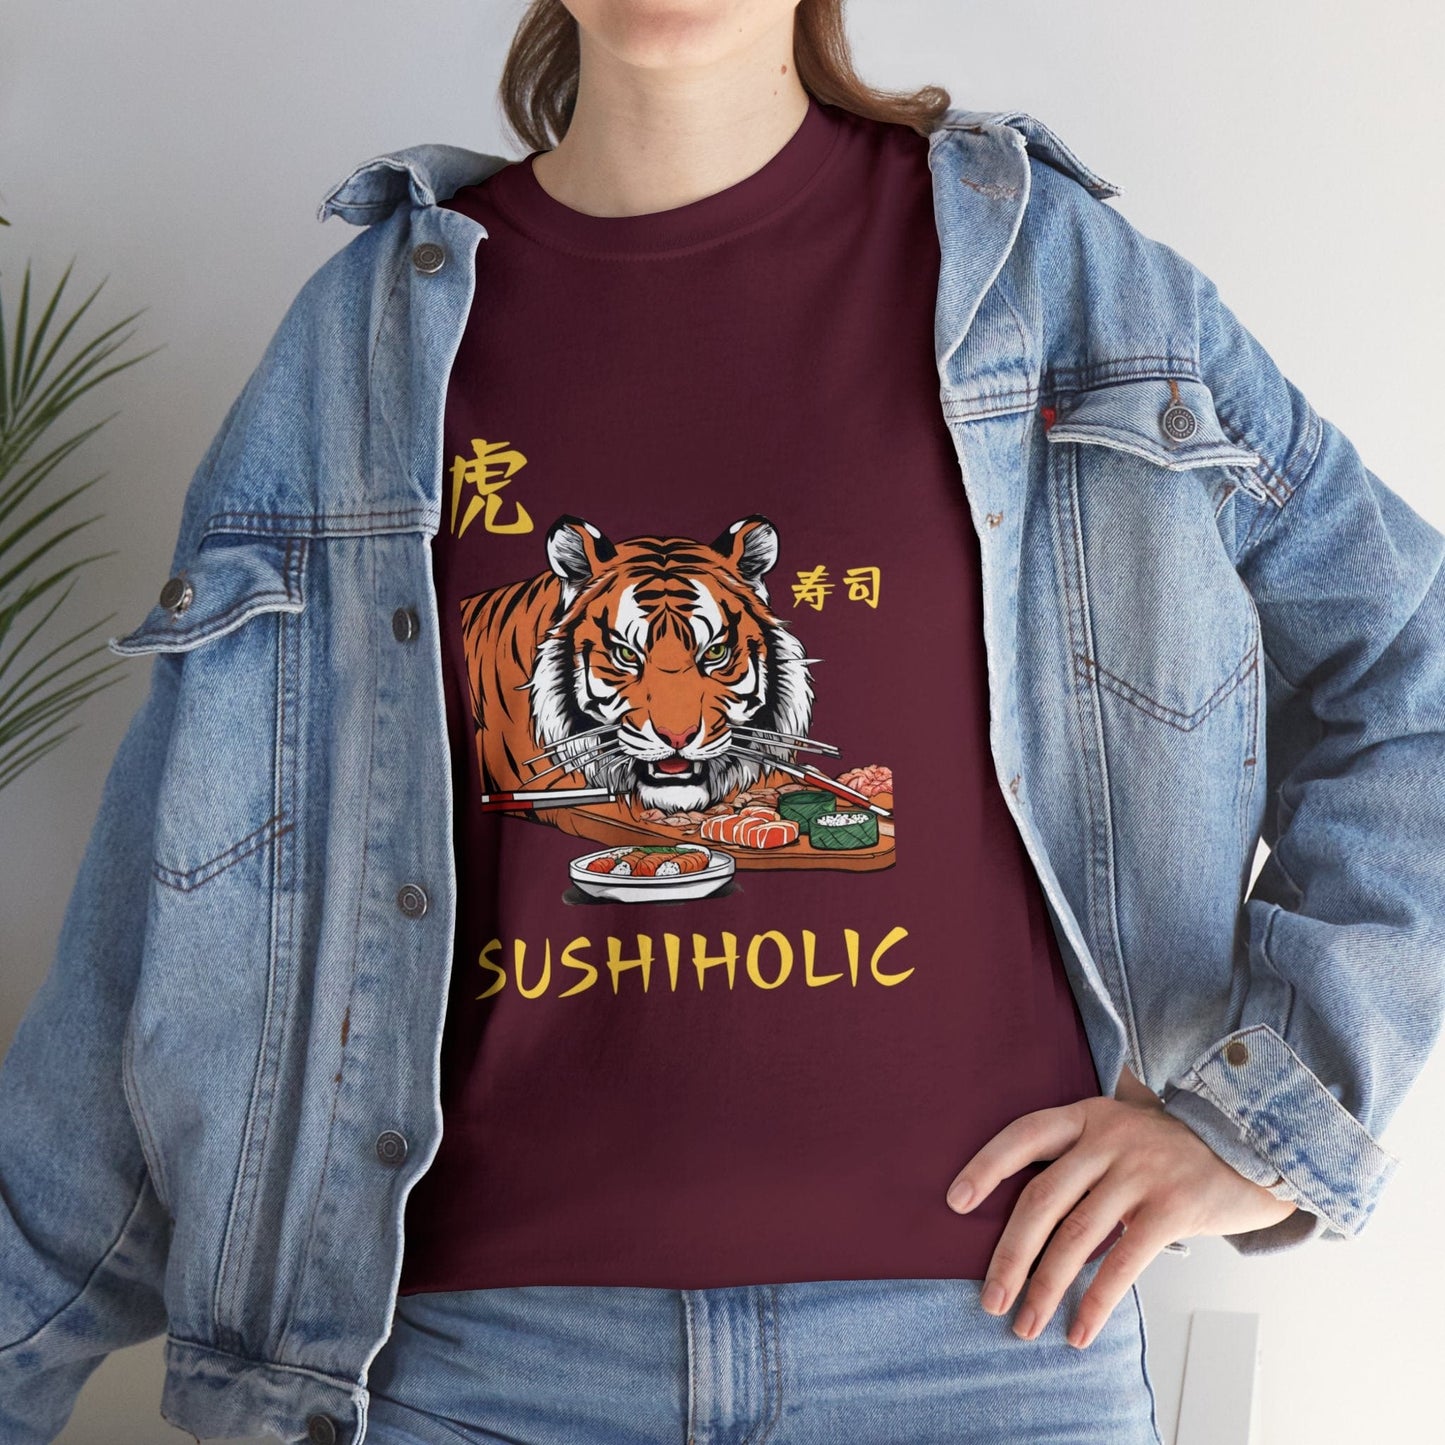 Camiseta Tiger Sushiholic Flashlander